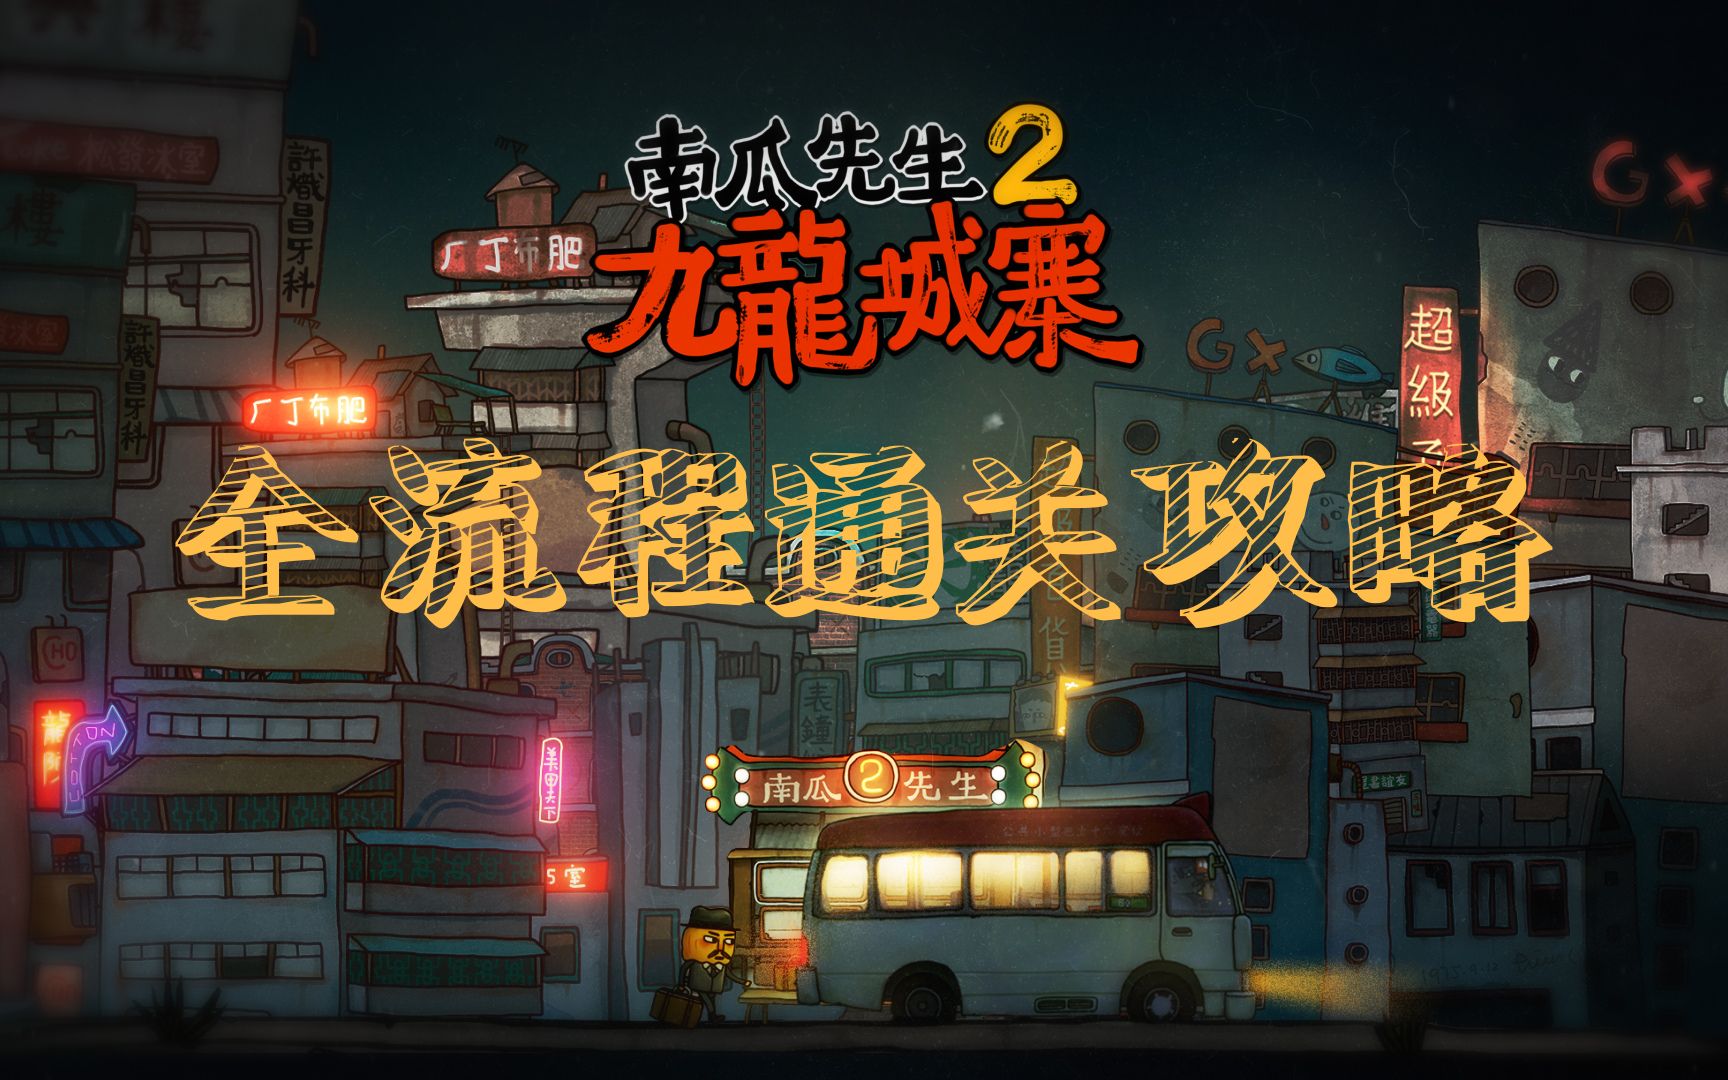 《南瓜先生2 九龙城寨》最新高清截图 Steam多数好评_3DM单机